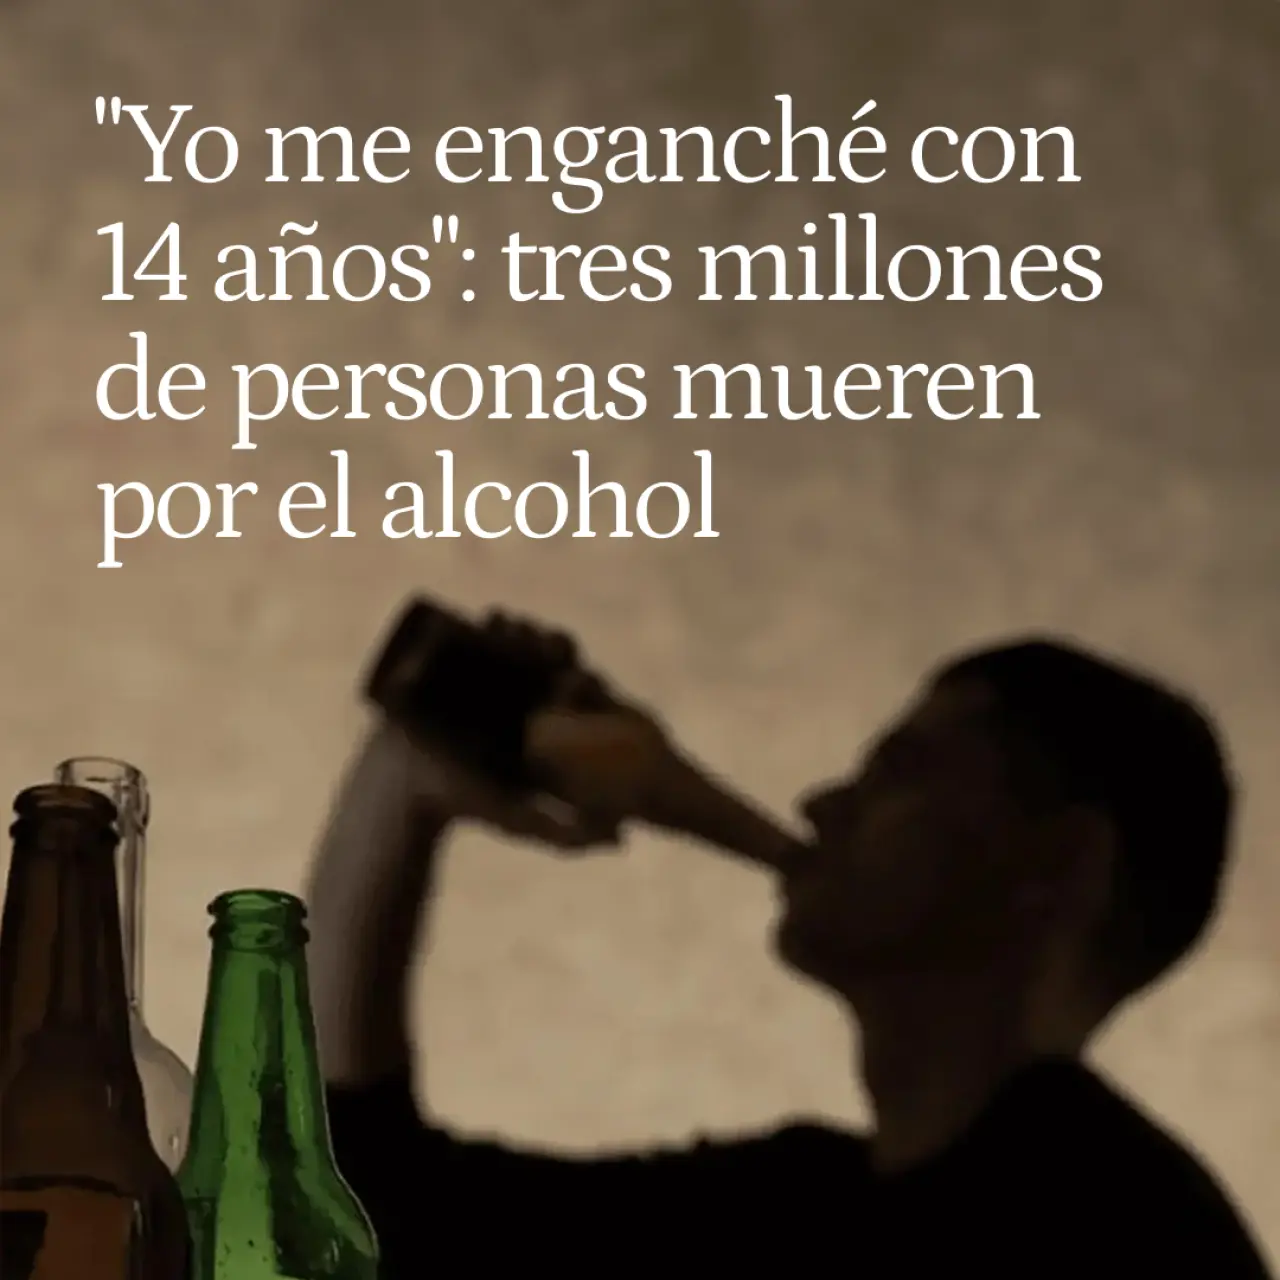 "Yo me enganché con 14 años": ya hay tres millones de personas que mueren por el consumo de alcohol